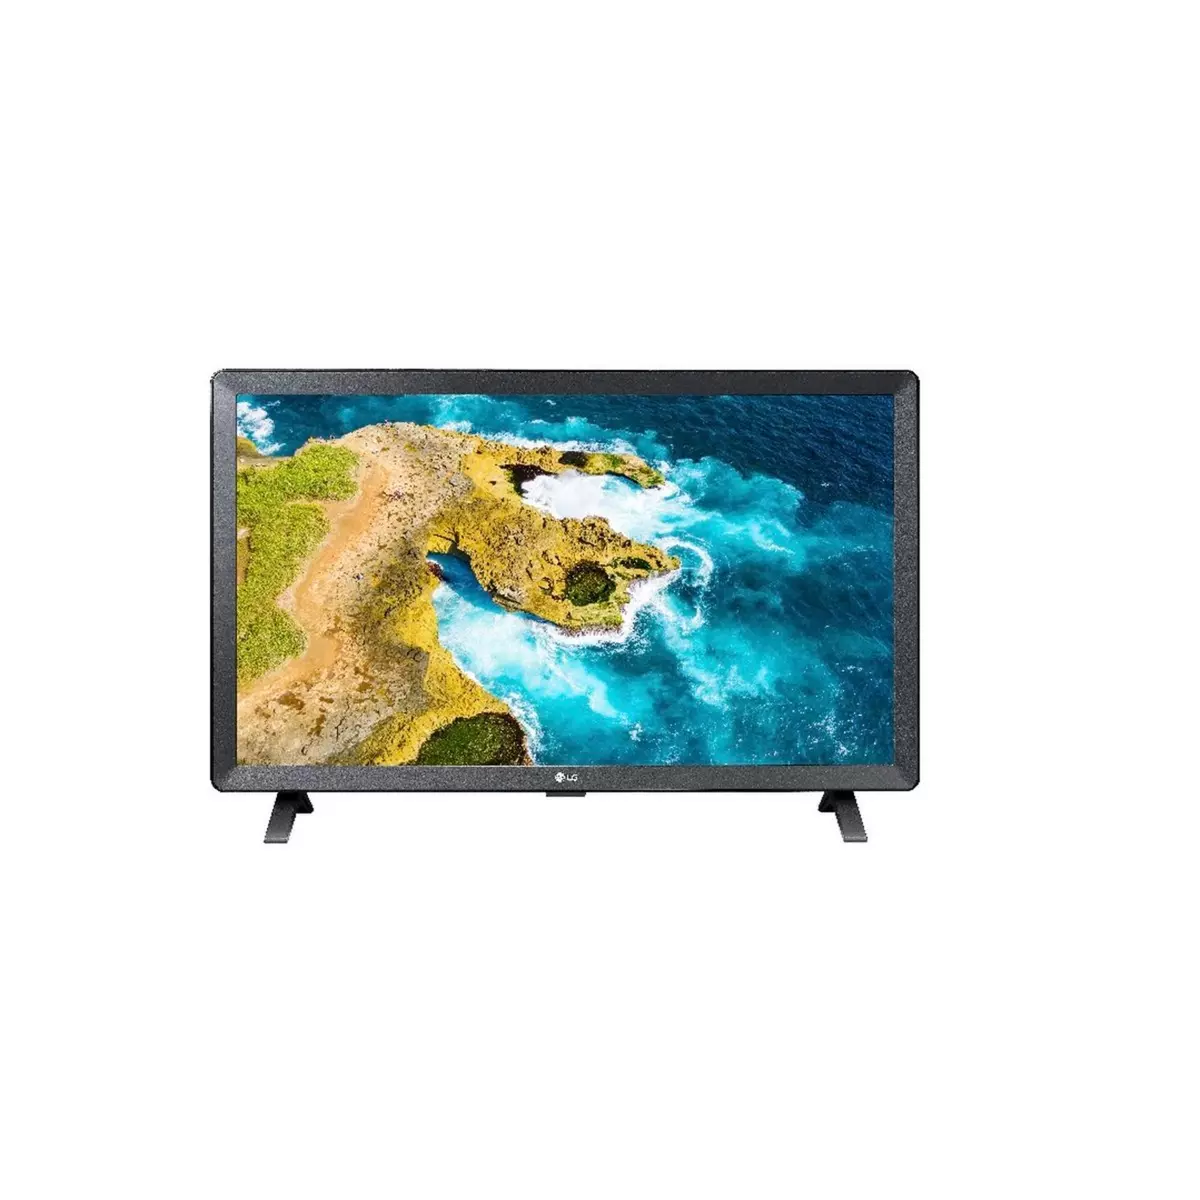 LG 24TQ520S TV LED HD 60 cm